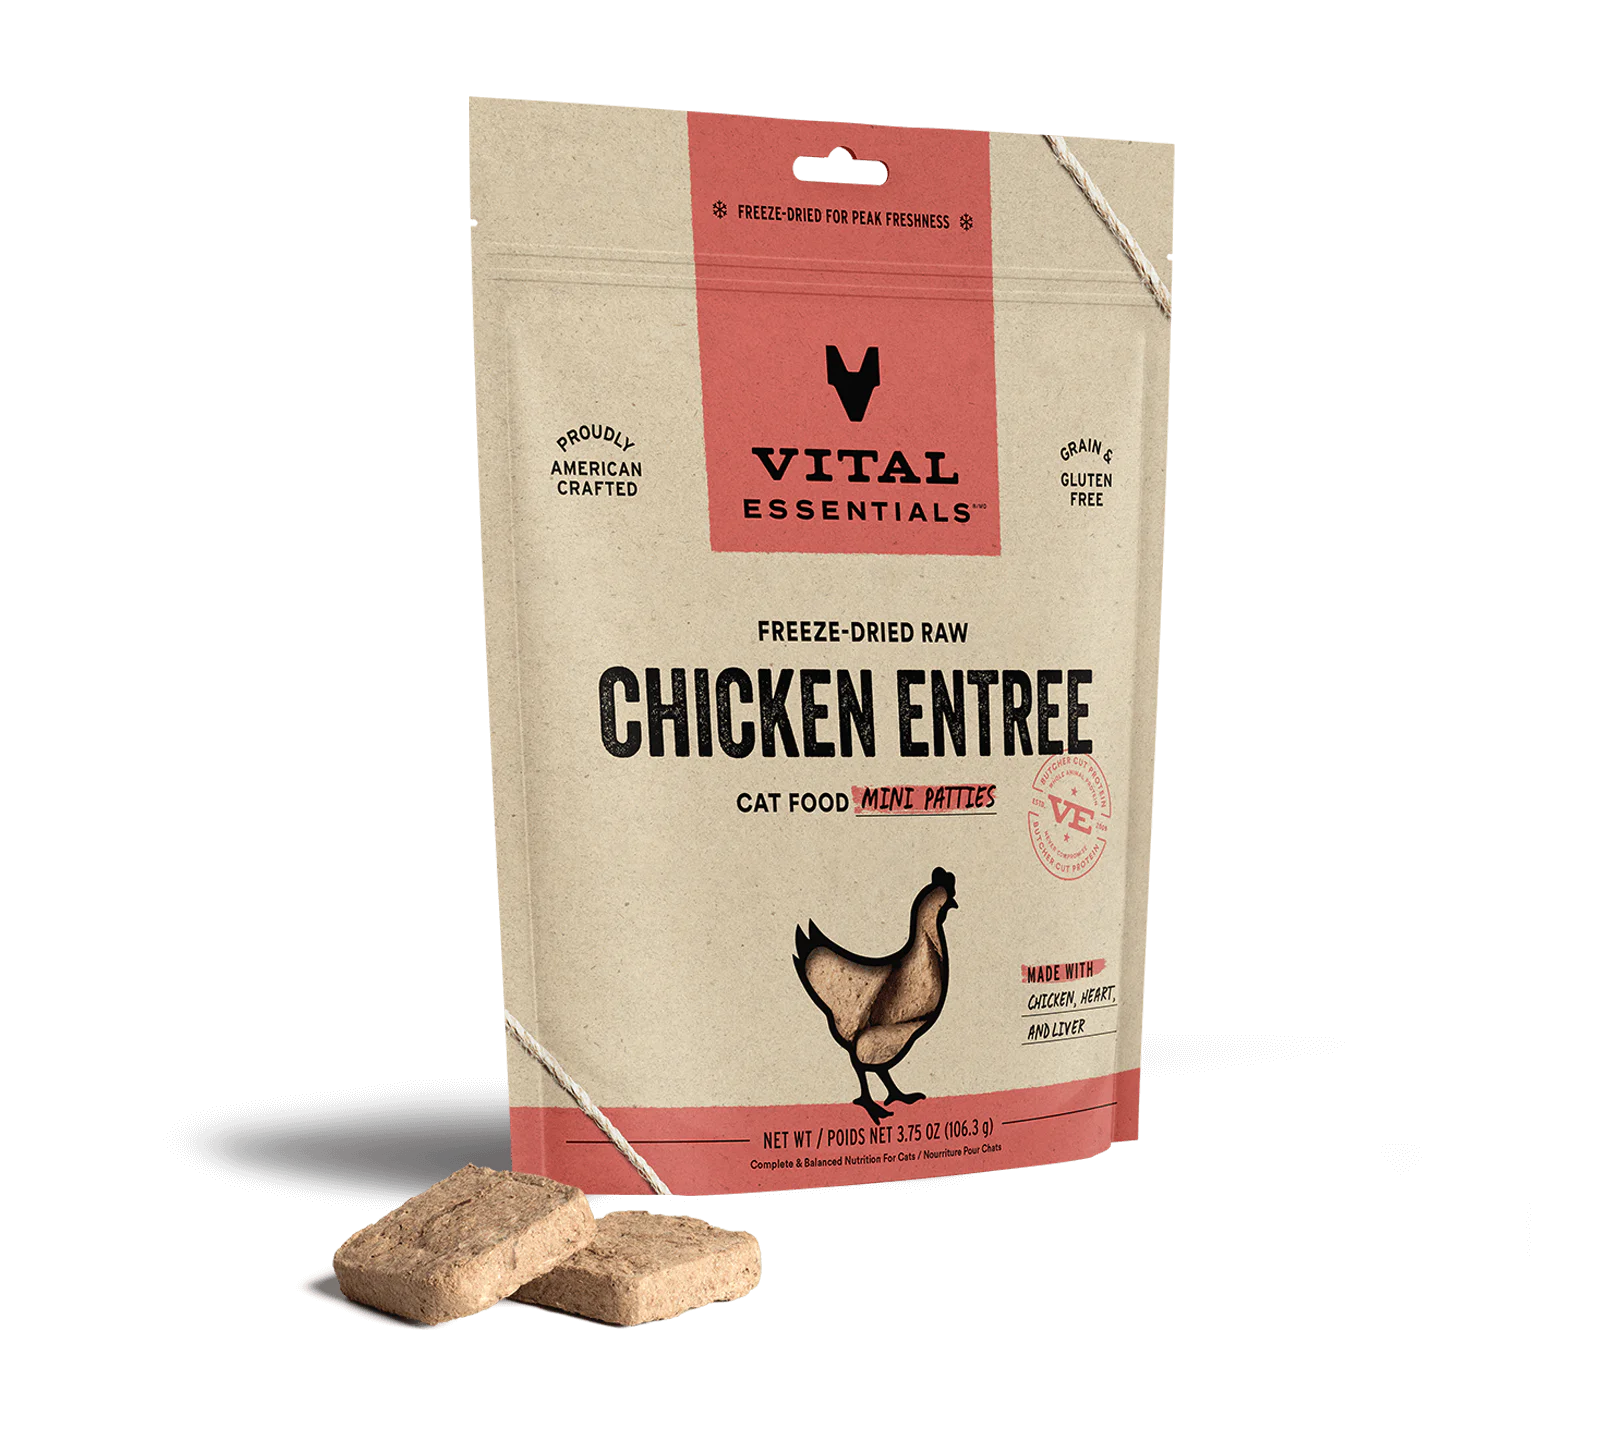 Vital Essentials (VE) - Mini Patties - Chicken Recipes (Cat Food)